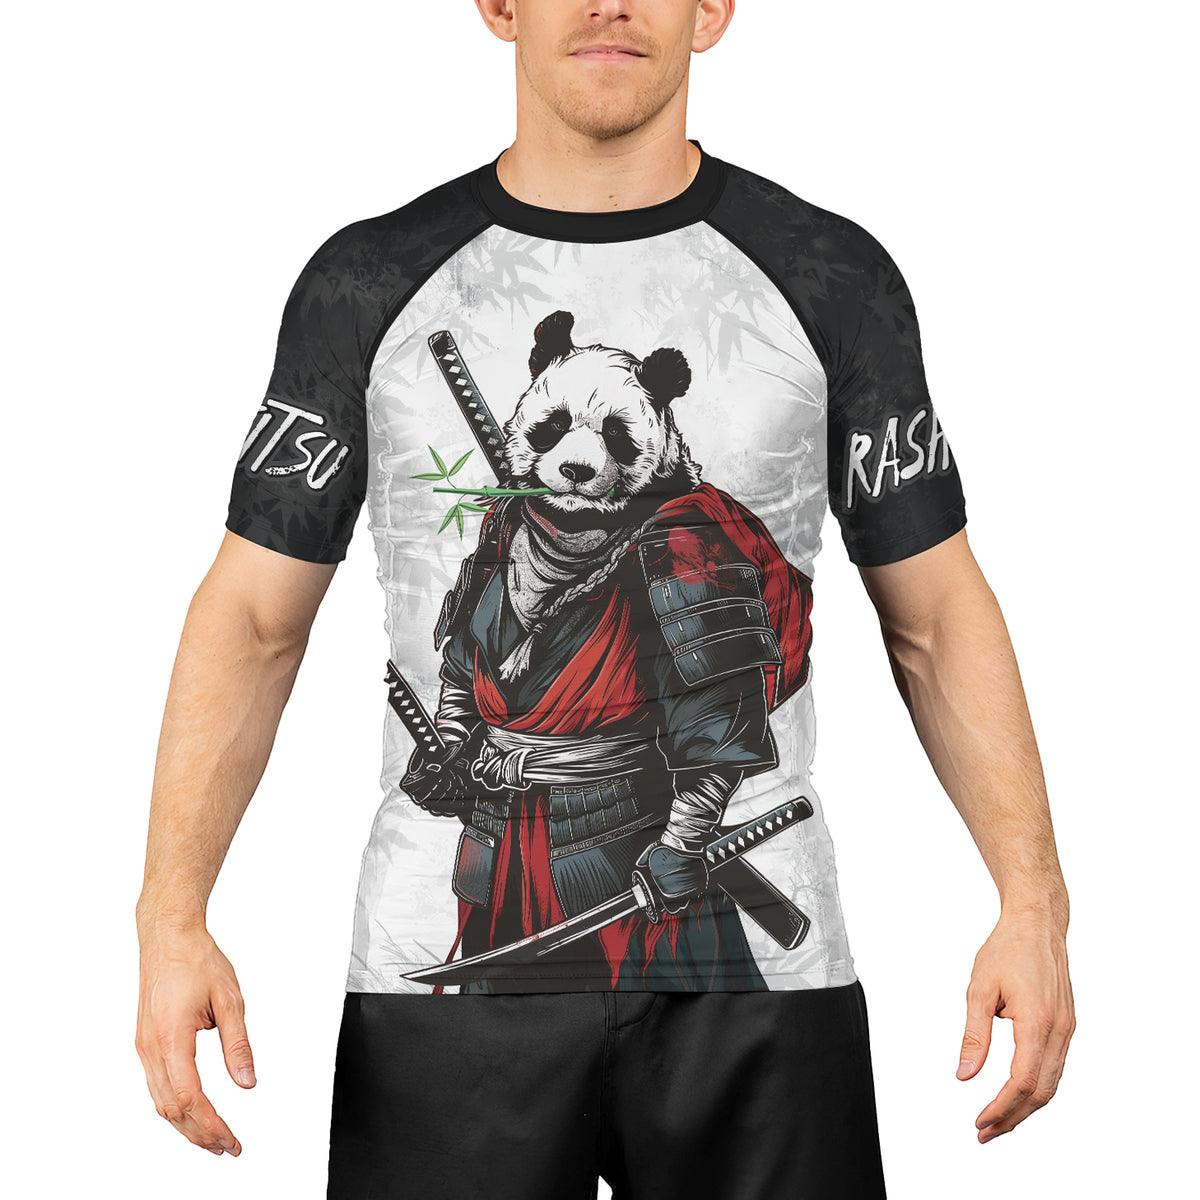 Rashninja Mystic Warrior Panda Samurai Men's Short Sleeve Rash Guard - Rashninja LLC